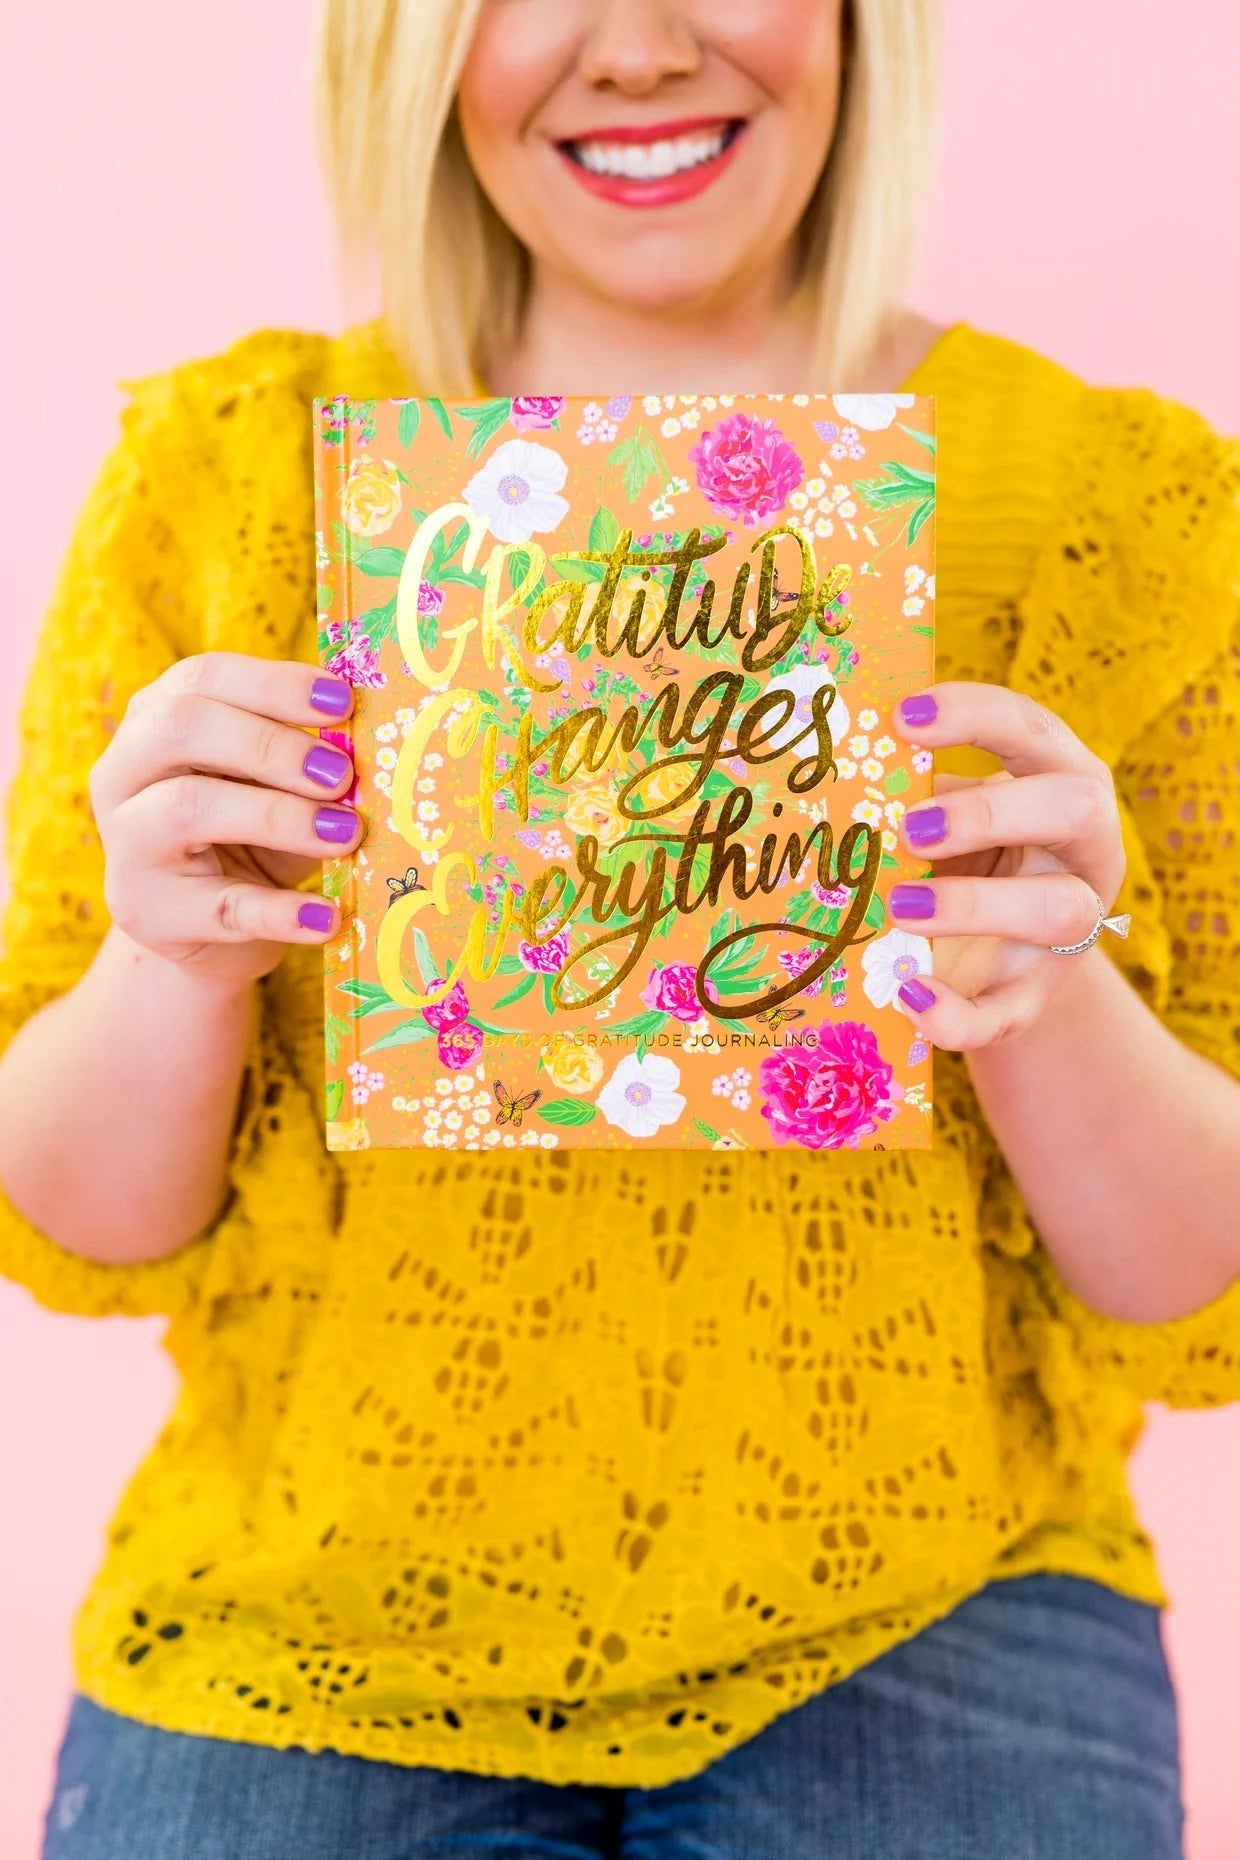 Gratitude Changes Everything 365 Day Journal - Lavender Hills BeautyTaylor Elliott DesignsNBK-06